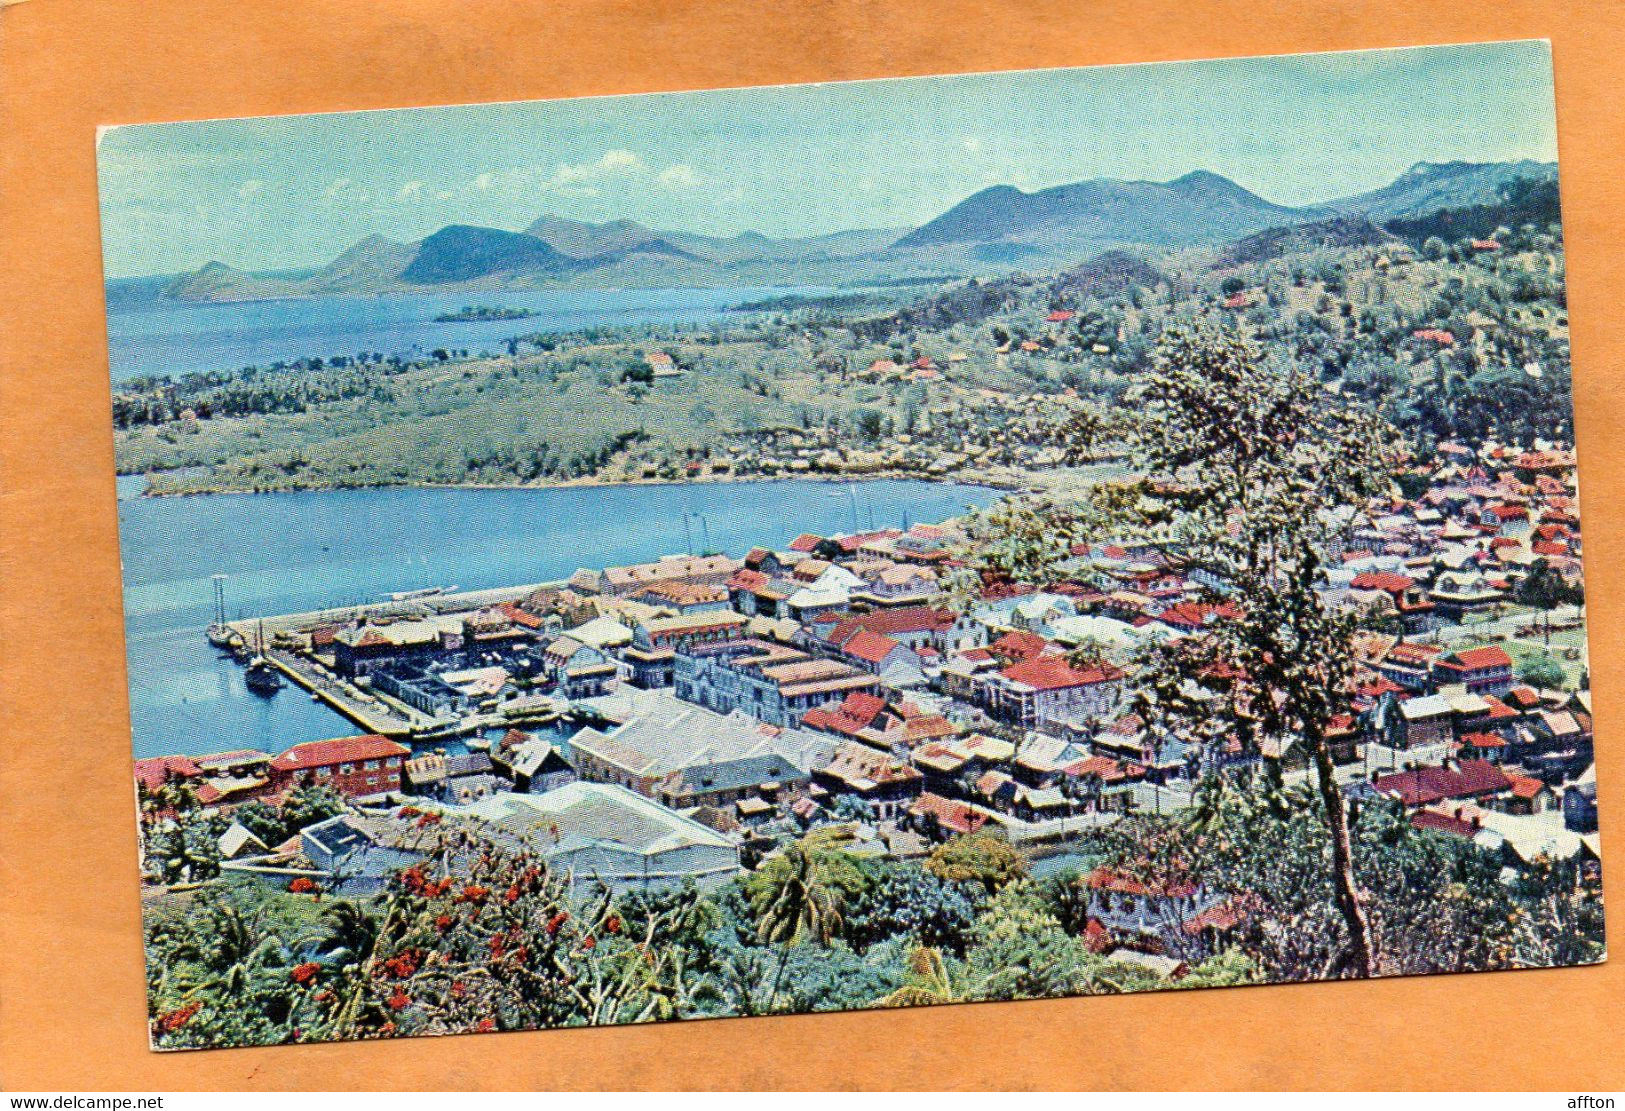 Saint Lucia Old Postcard - Santa Lucía